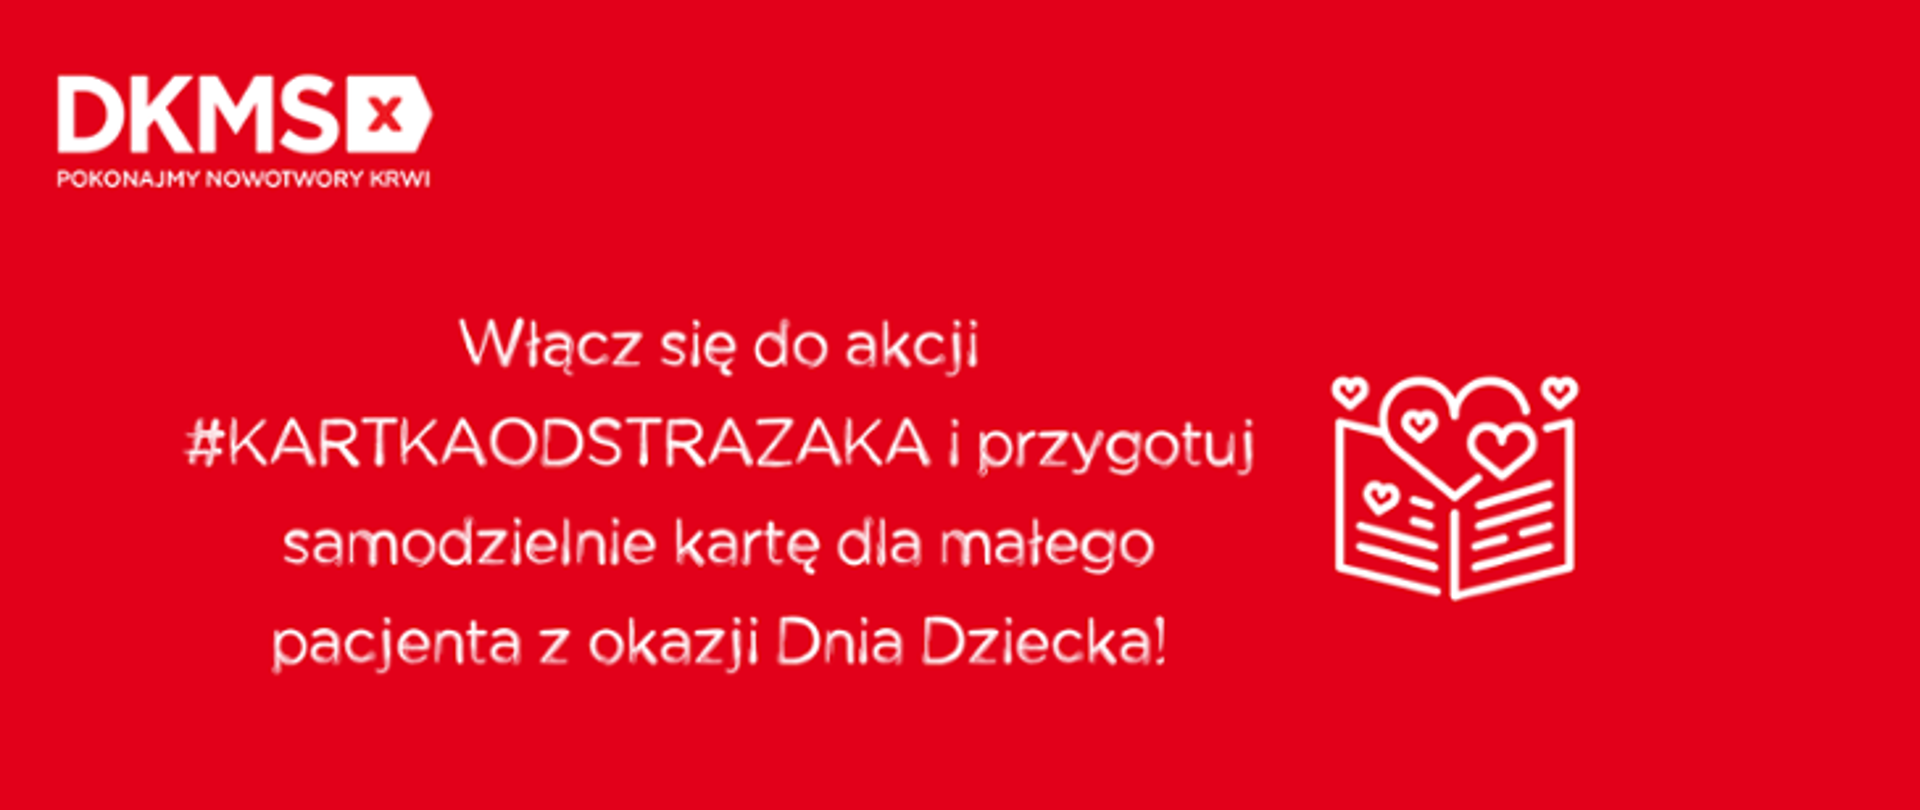 Baner zachęcający do udziału w akcji #kartkaodstrazaka